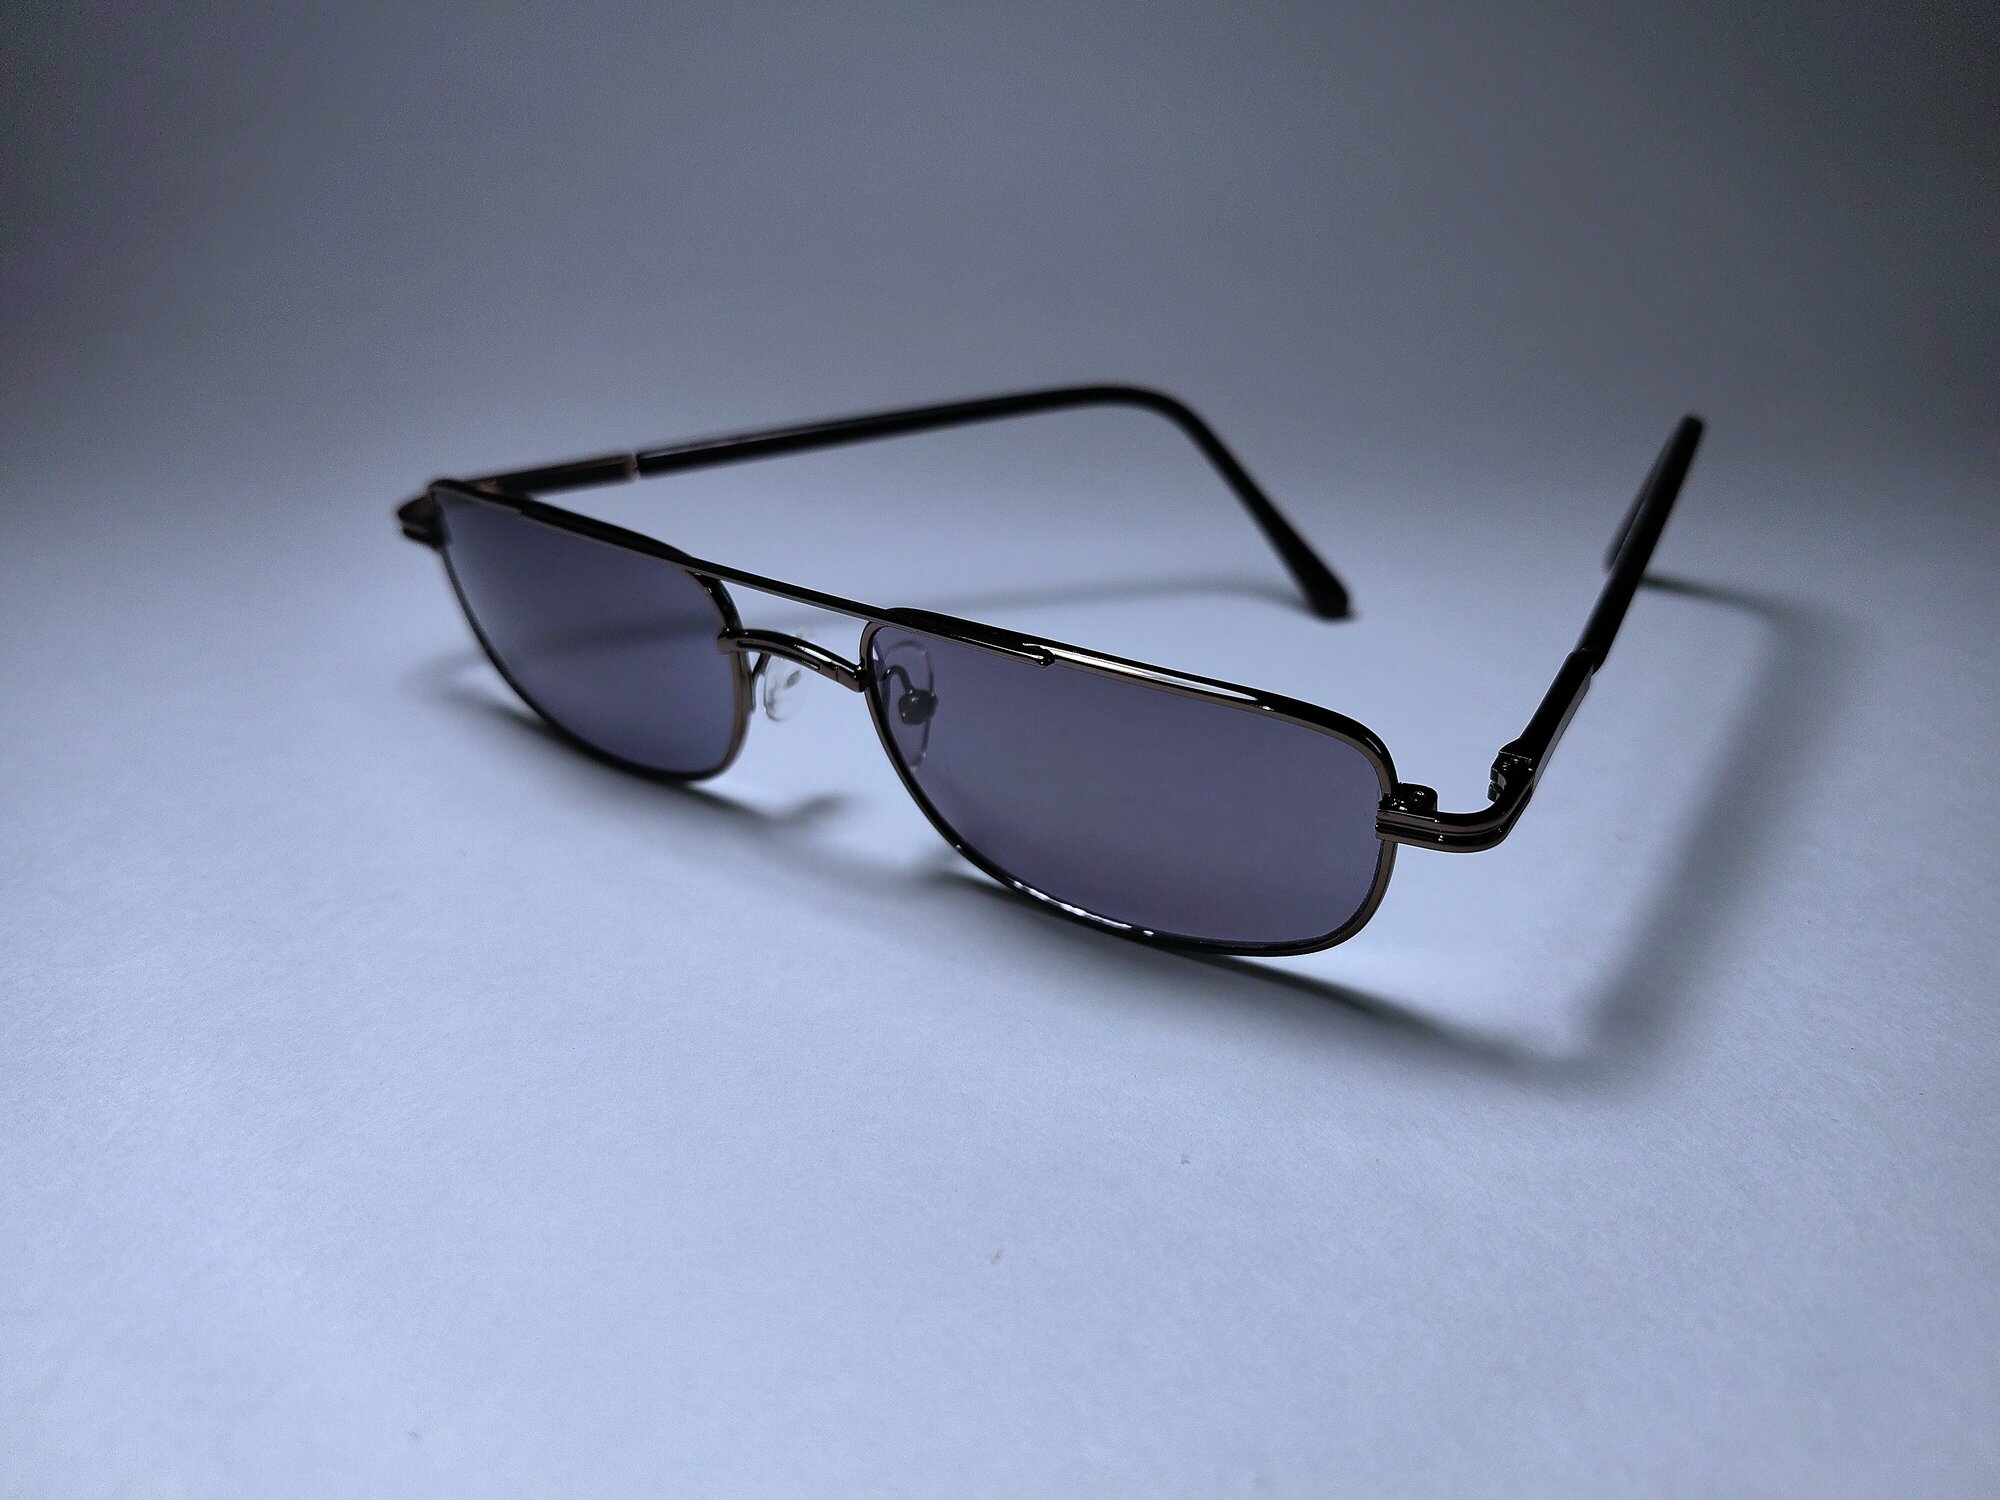 Готовые очки для зрения, стекло +1,75 (хамелеон) с фотохромными линзами, 62-64мм, очки для чтения, очки с диоптриями женские, мужские, оптика